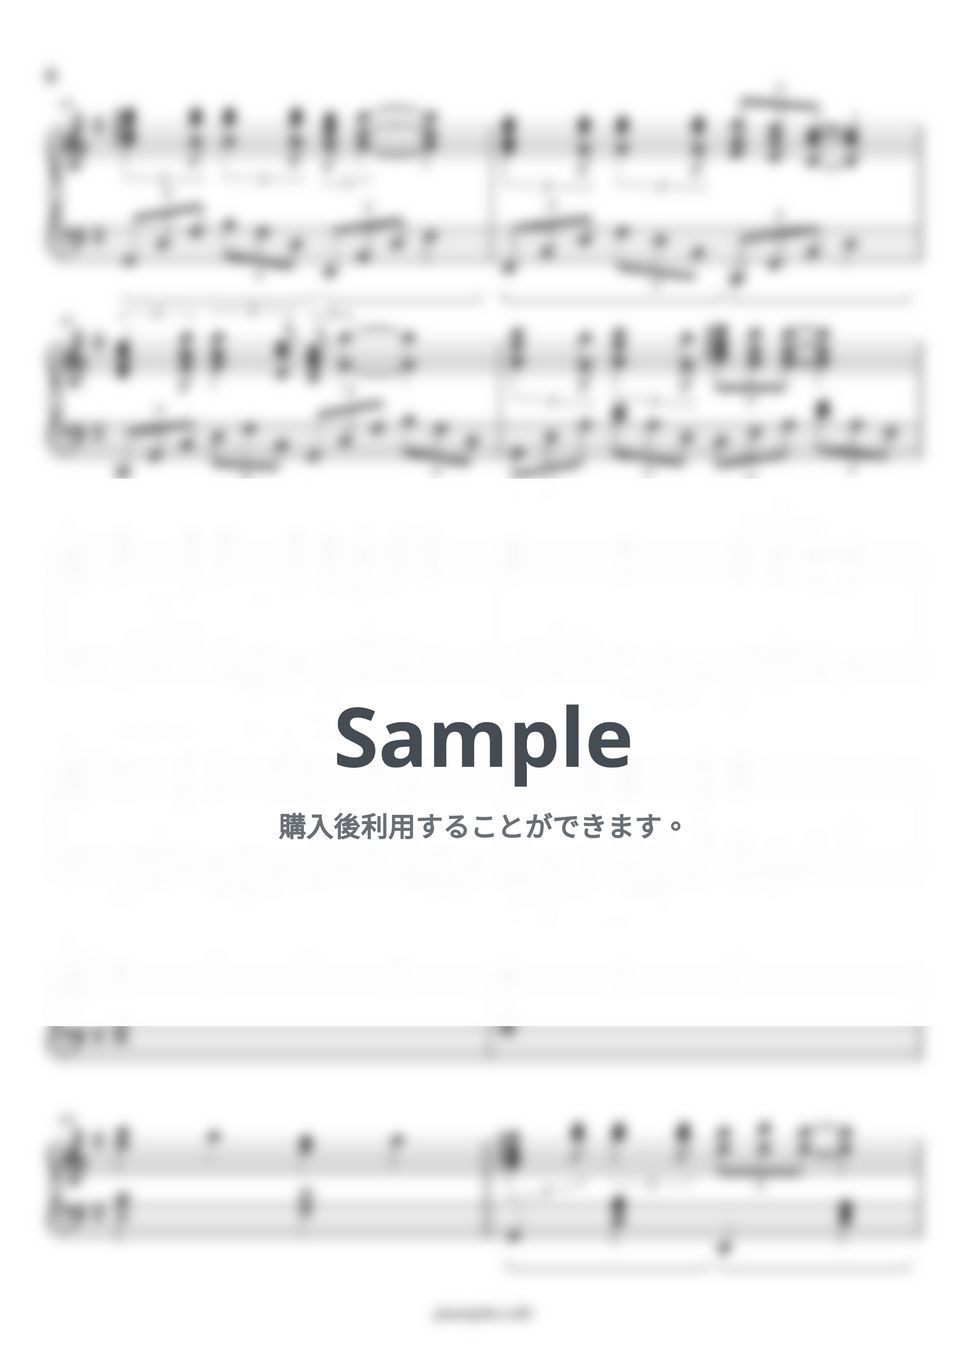 にじ by ピアノ塾